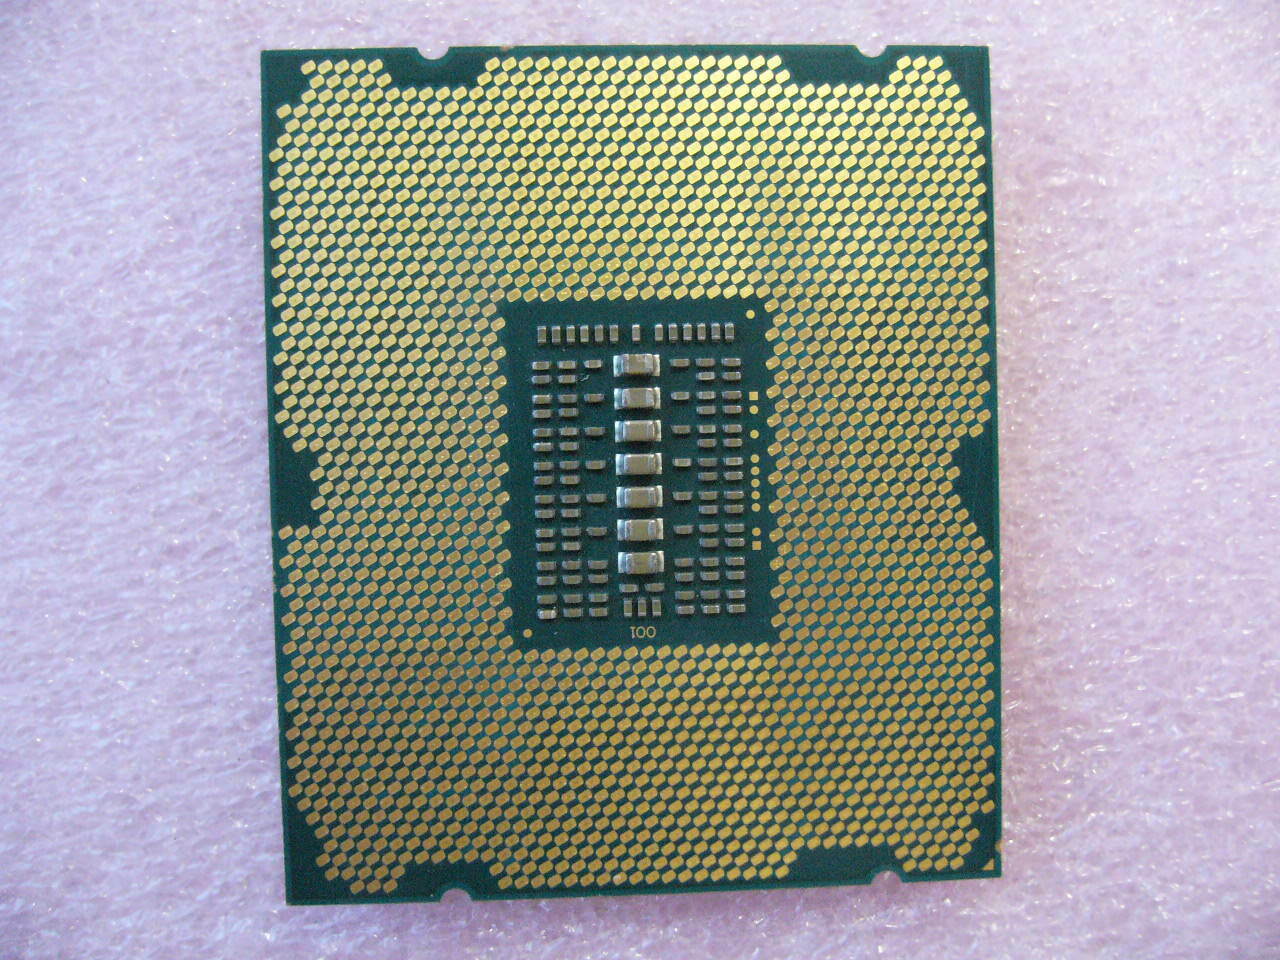 Intel E5-2650 V2 Xeon CPU 8-Cores 2.6Ghz 20MB Cache LGA2011 SR1A8